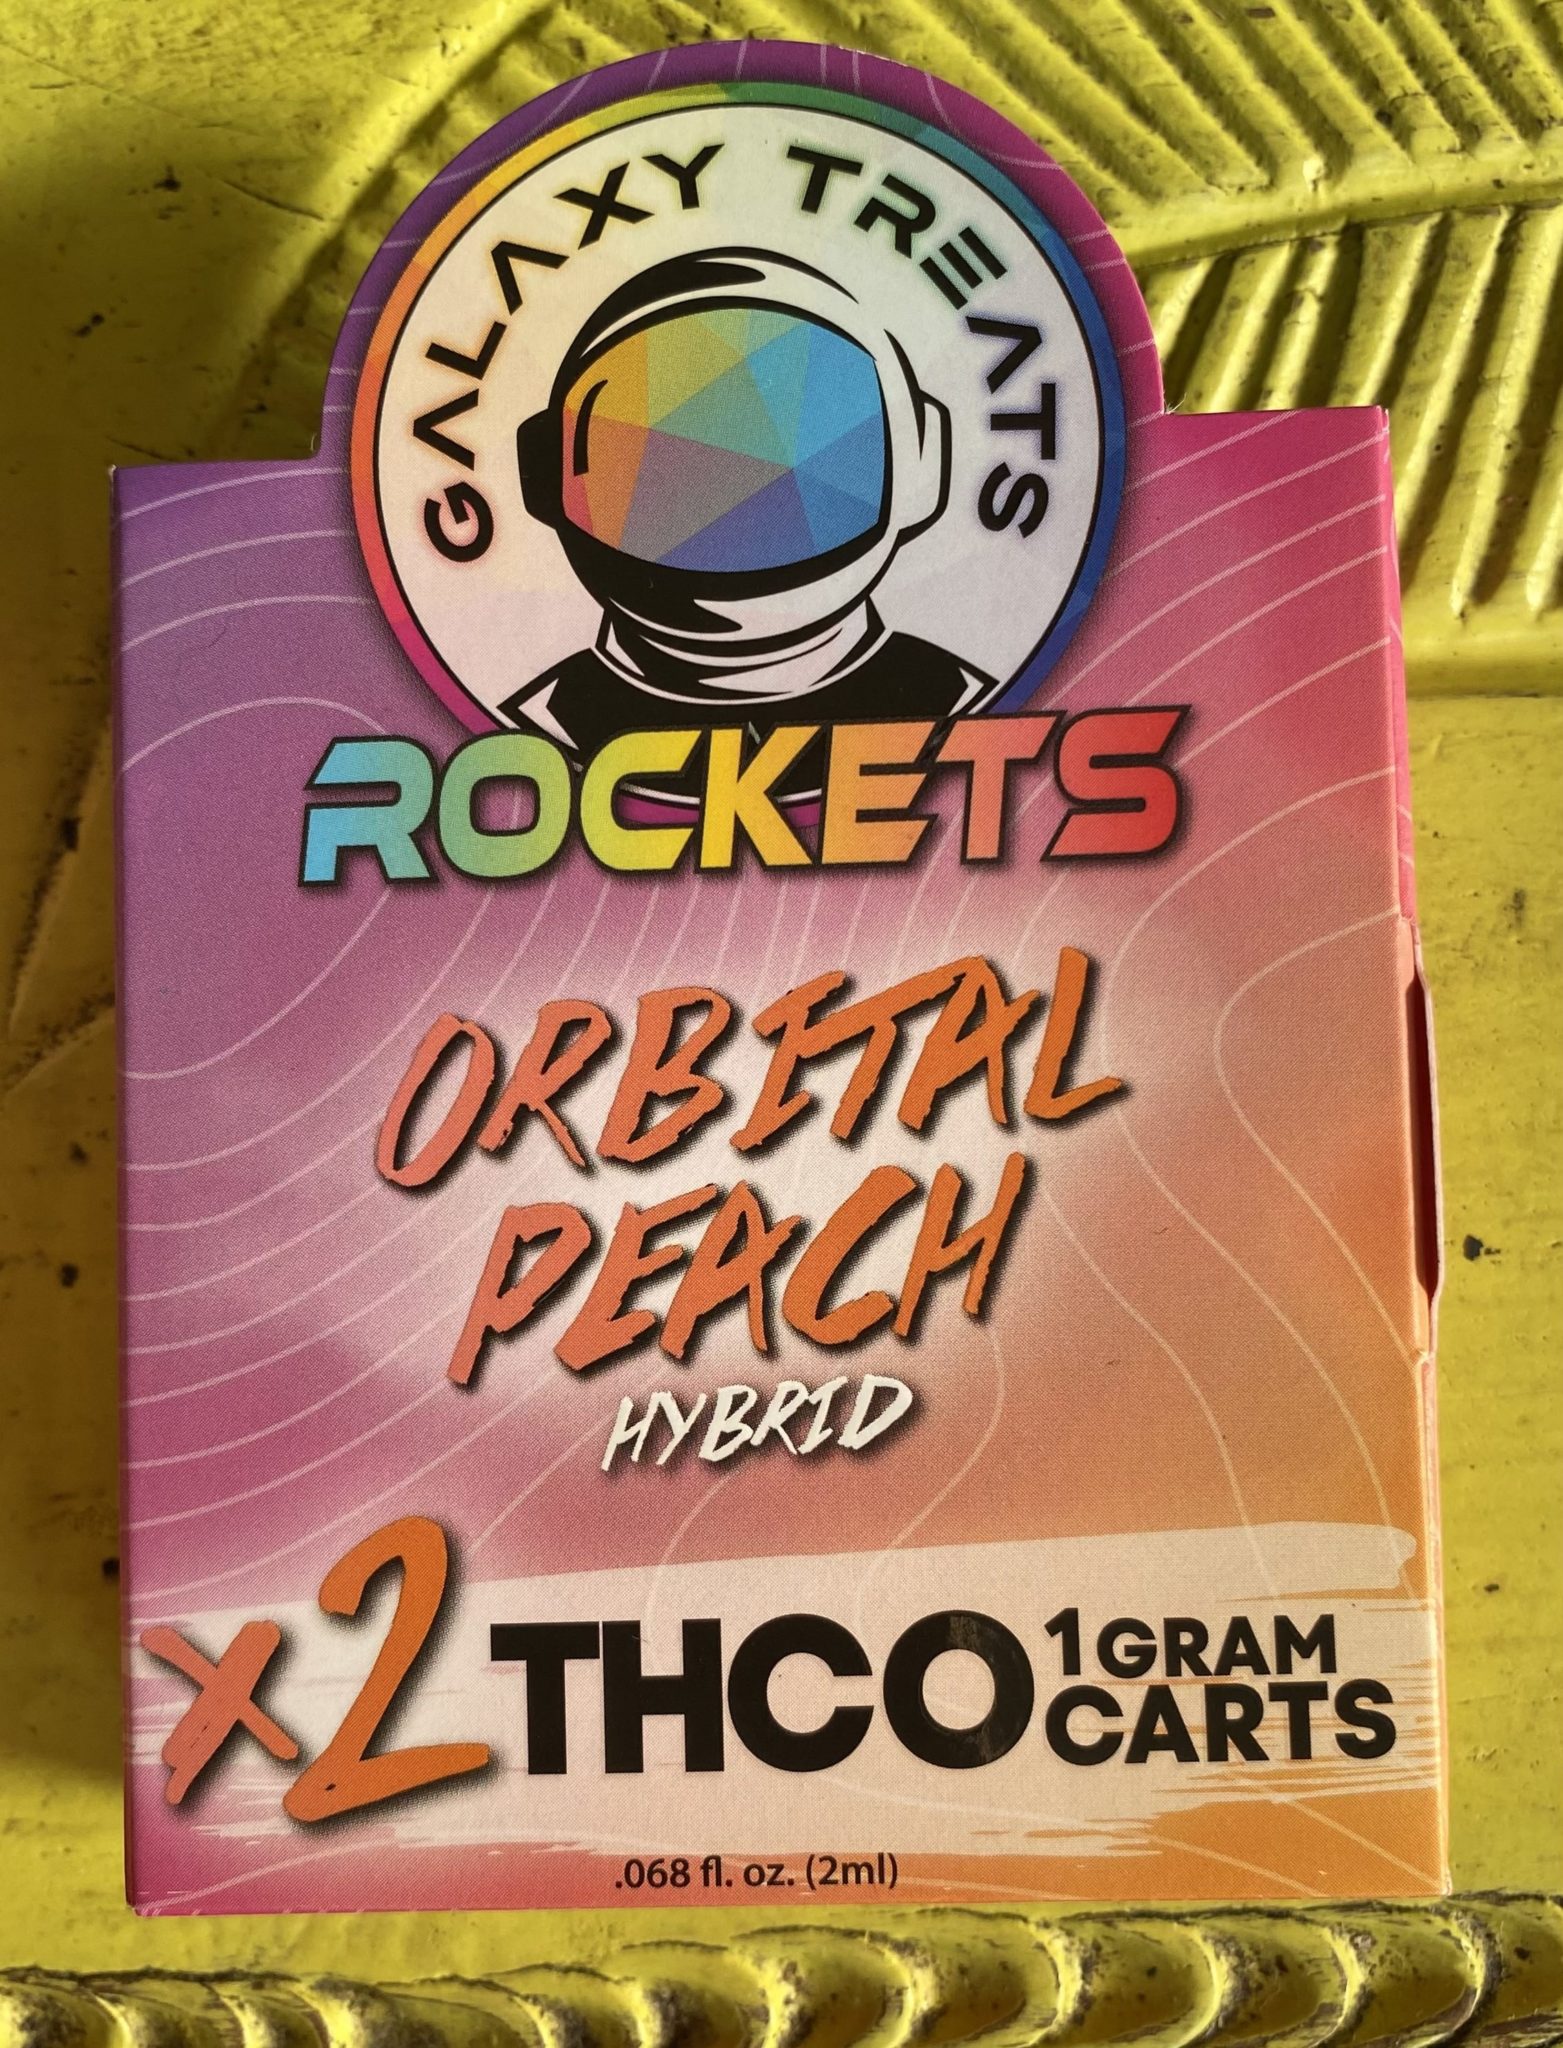 galaxy treats rockets peach